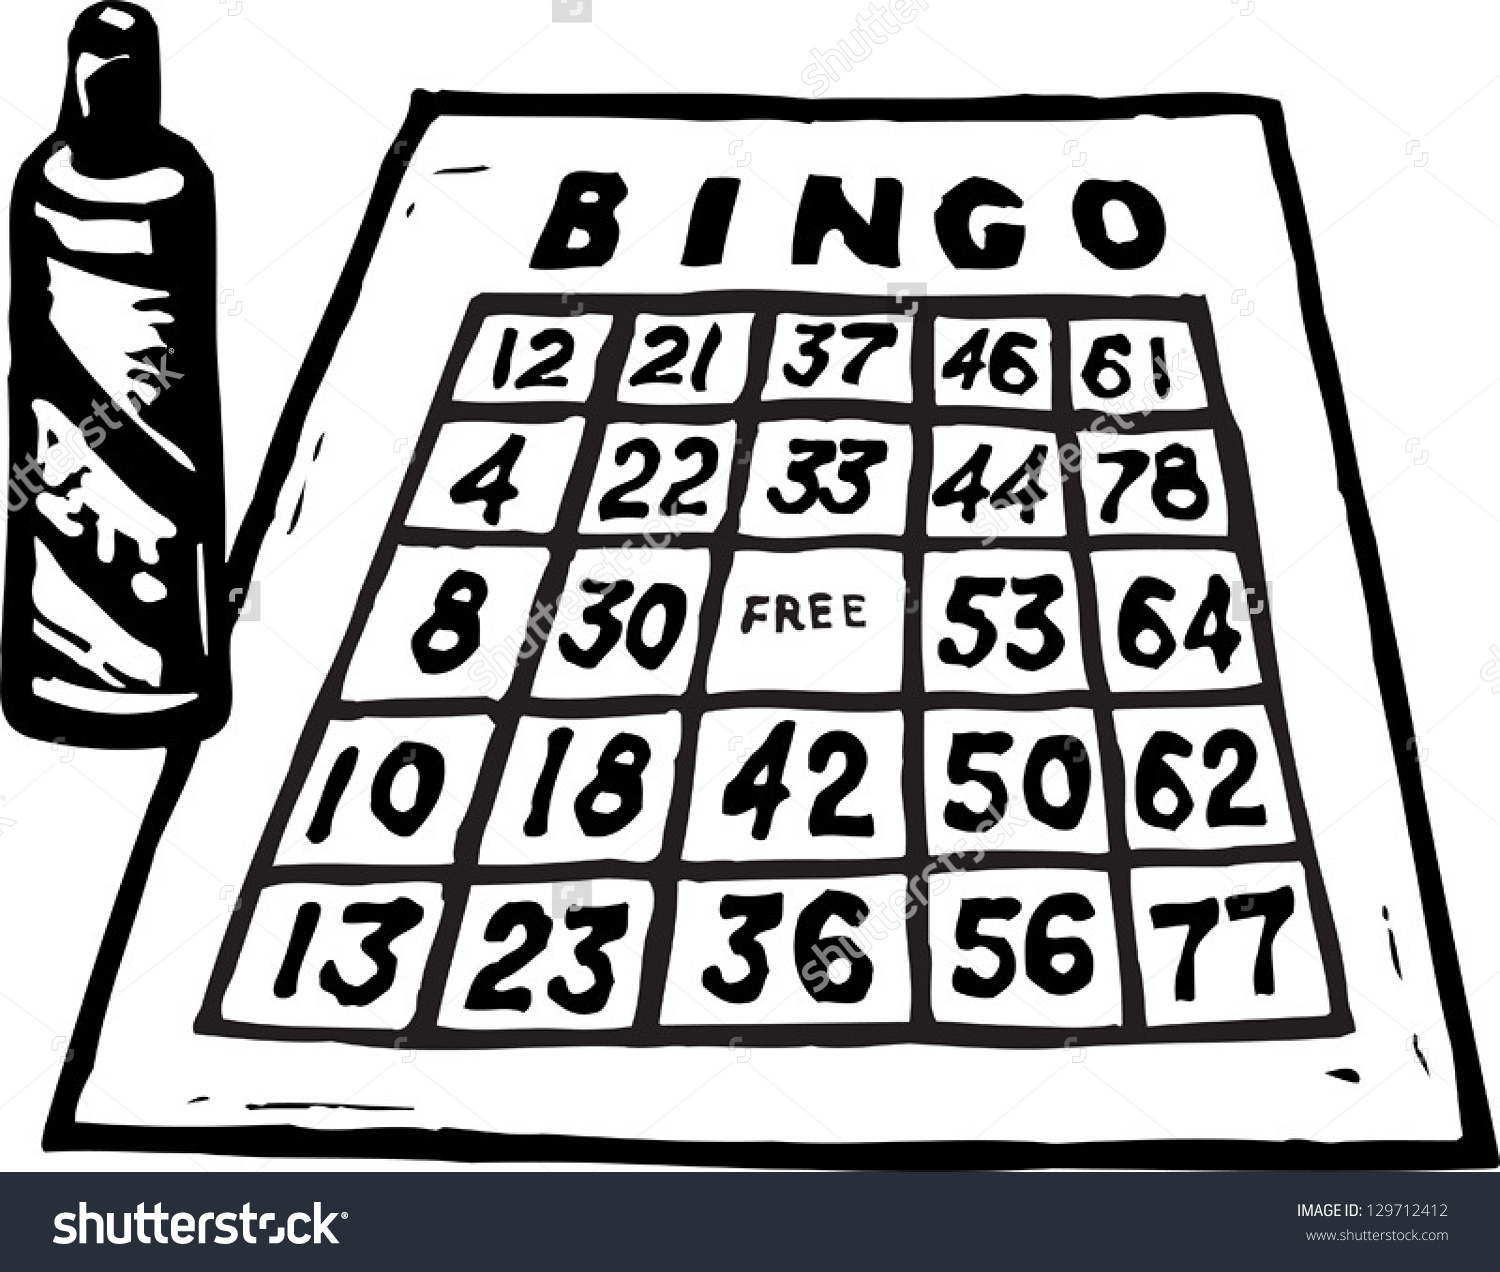 bingo clipart black and white